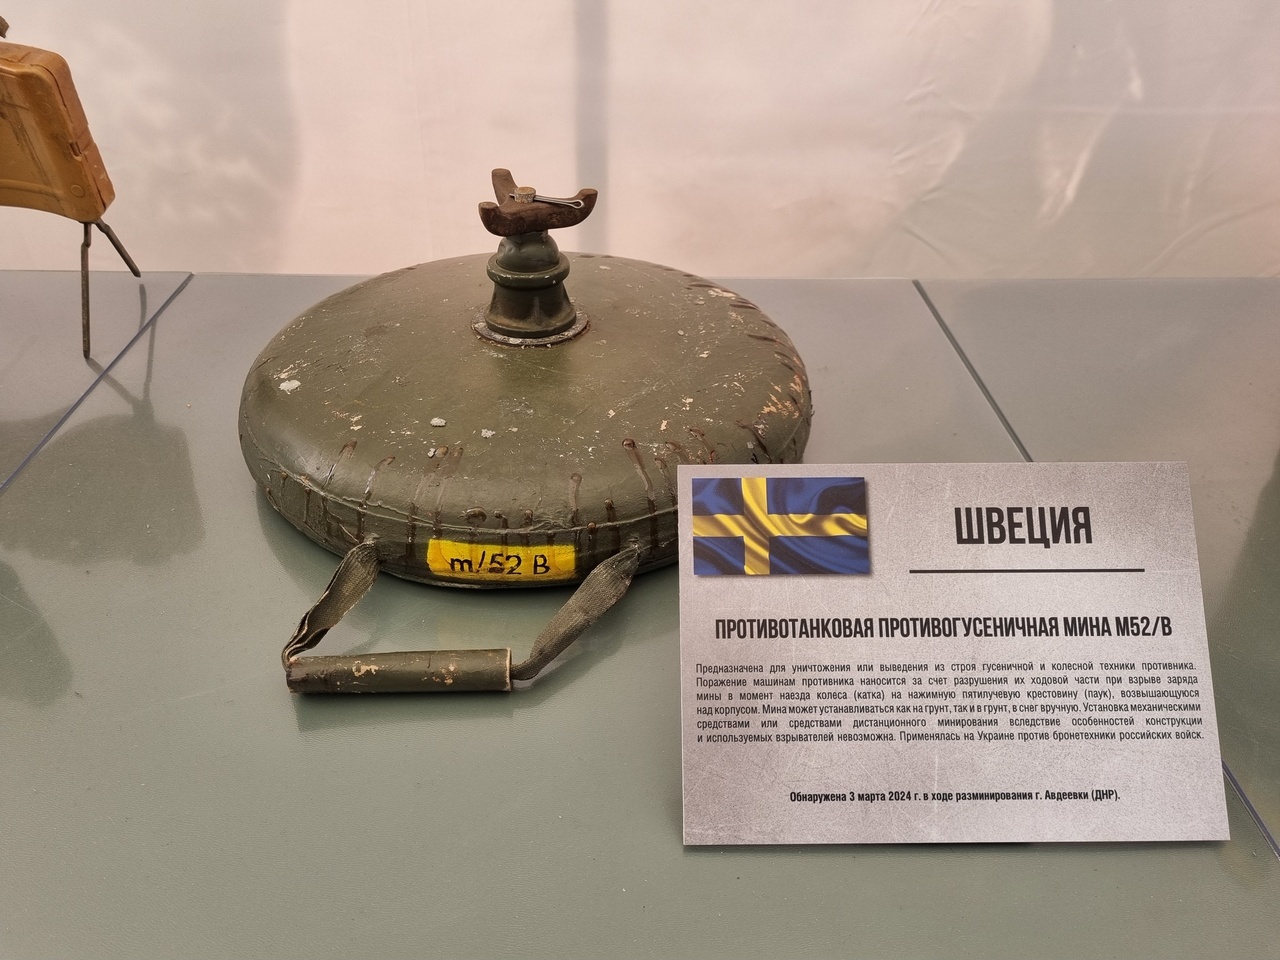 Противотанковая мина M/52B производства Швеции.